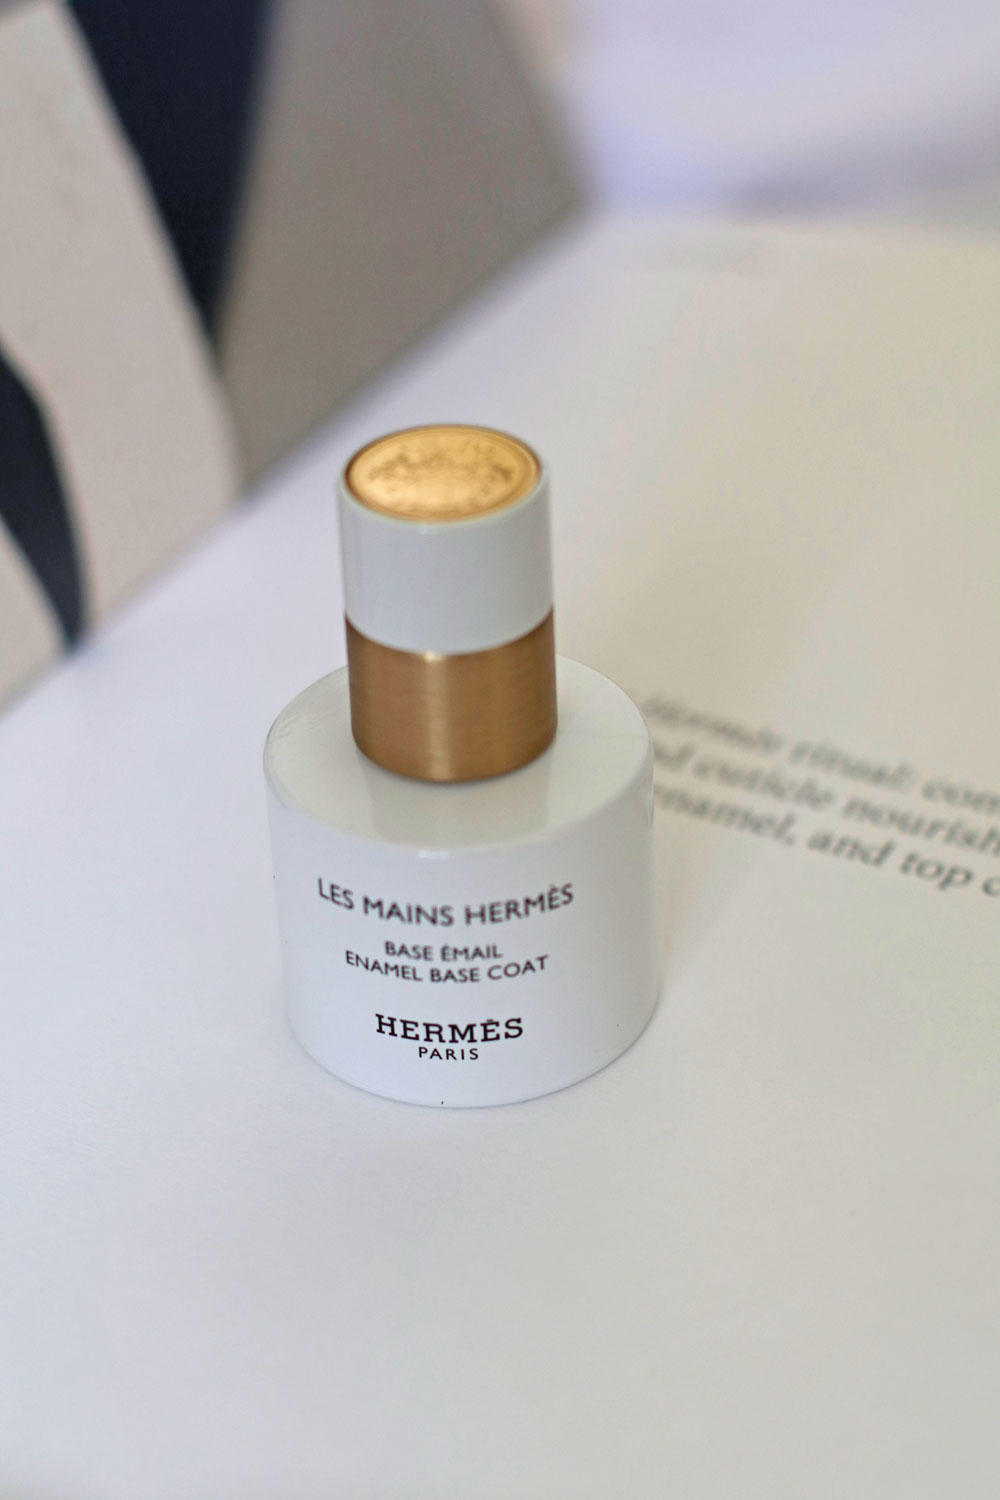 Hermès Beauté erweitert mit Les Mains Hermès das Sortiment um eine fabelhafte Farb- und Pflegekollektion für die Hände.